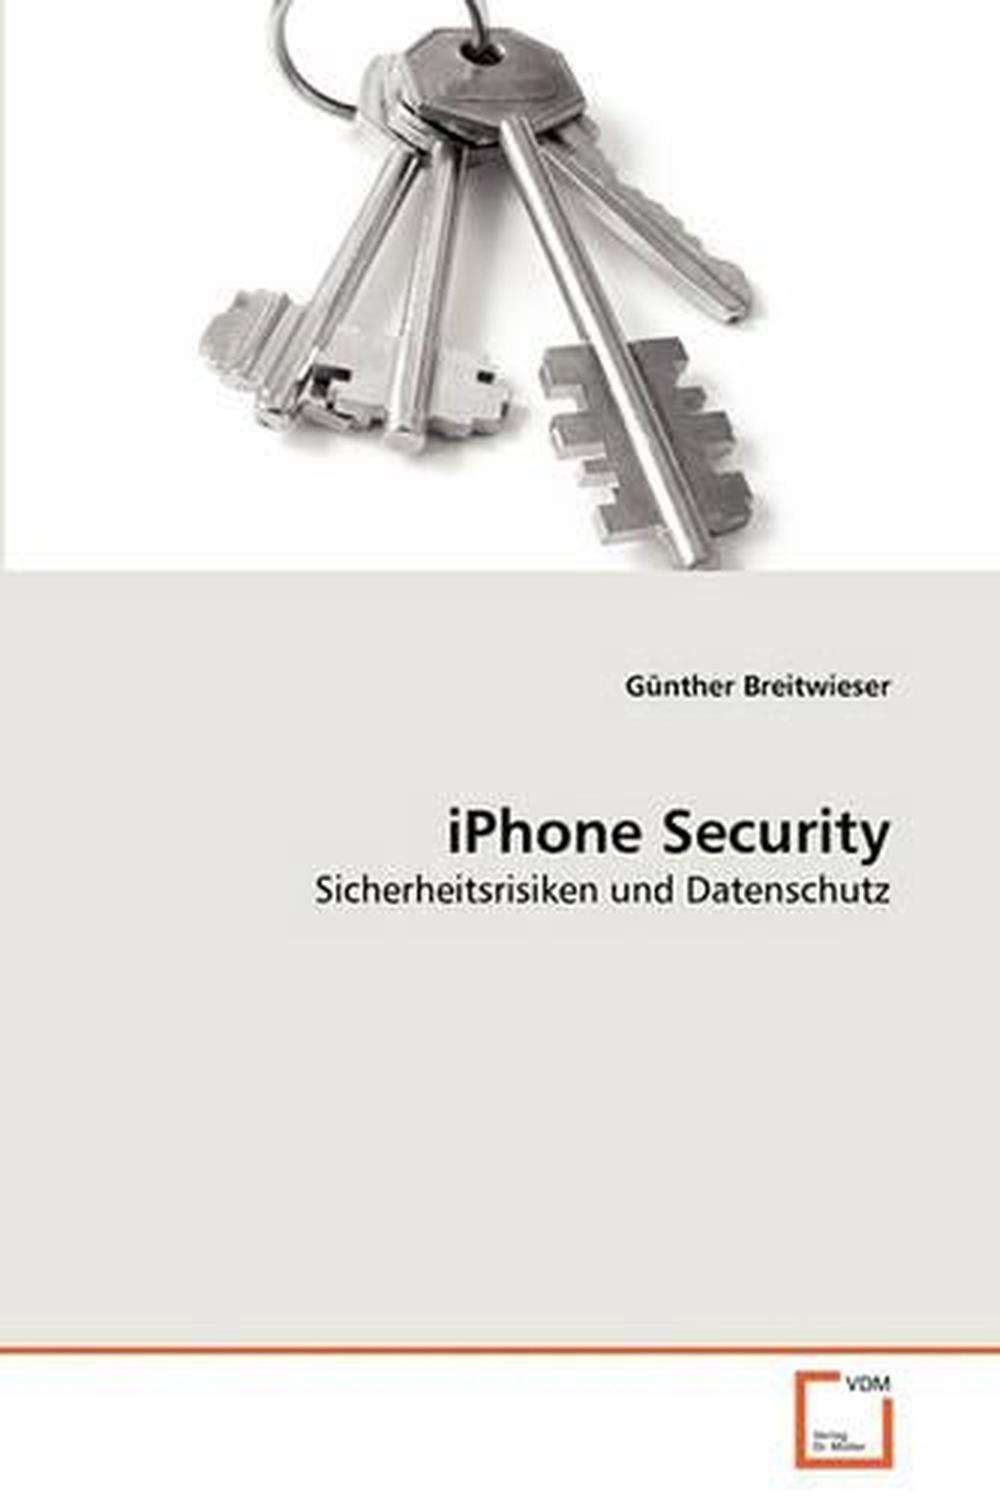 Iphone Security: Sicherheitsrisiken und Datenschutz by G. Nther Breitwieser (Ger - 第 1/1 張圖片